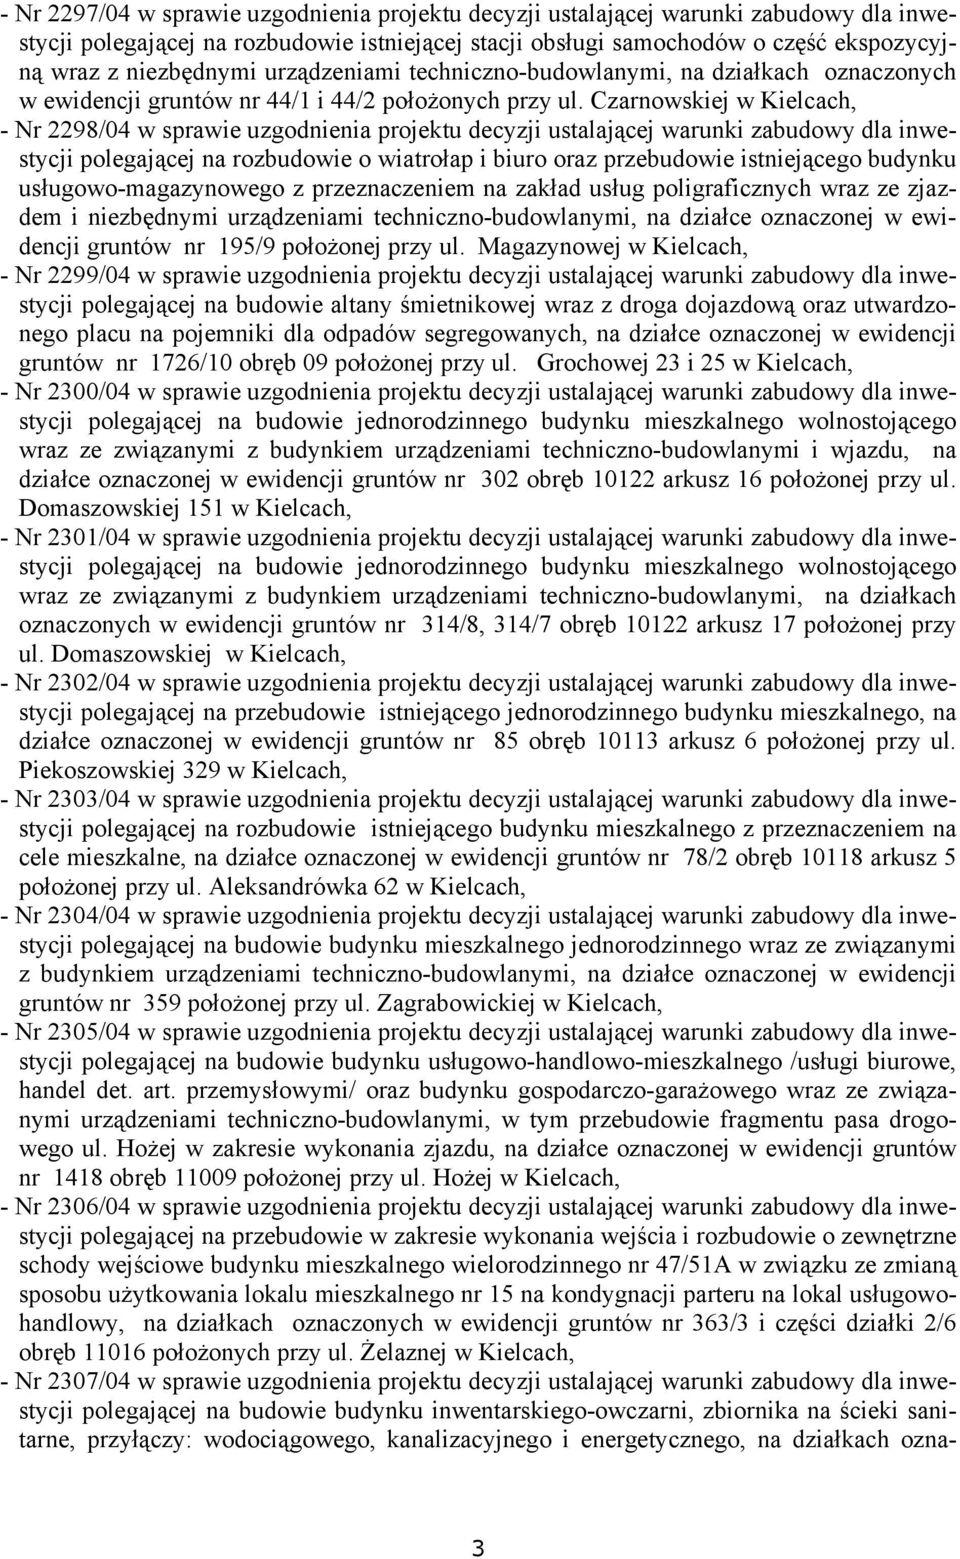 Czarnowskiej w Kielcach, - Nr 2298/04 w sprawie uzgodnienia projektu decyzji ustalającej warunki zabudowy dla inwestycji polegającej na rozbudowie o wiatrołap i biuro oraz przebudowie istniejącego